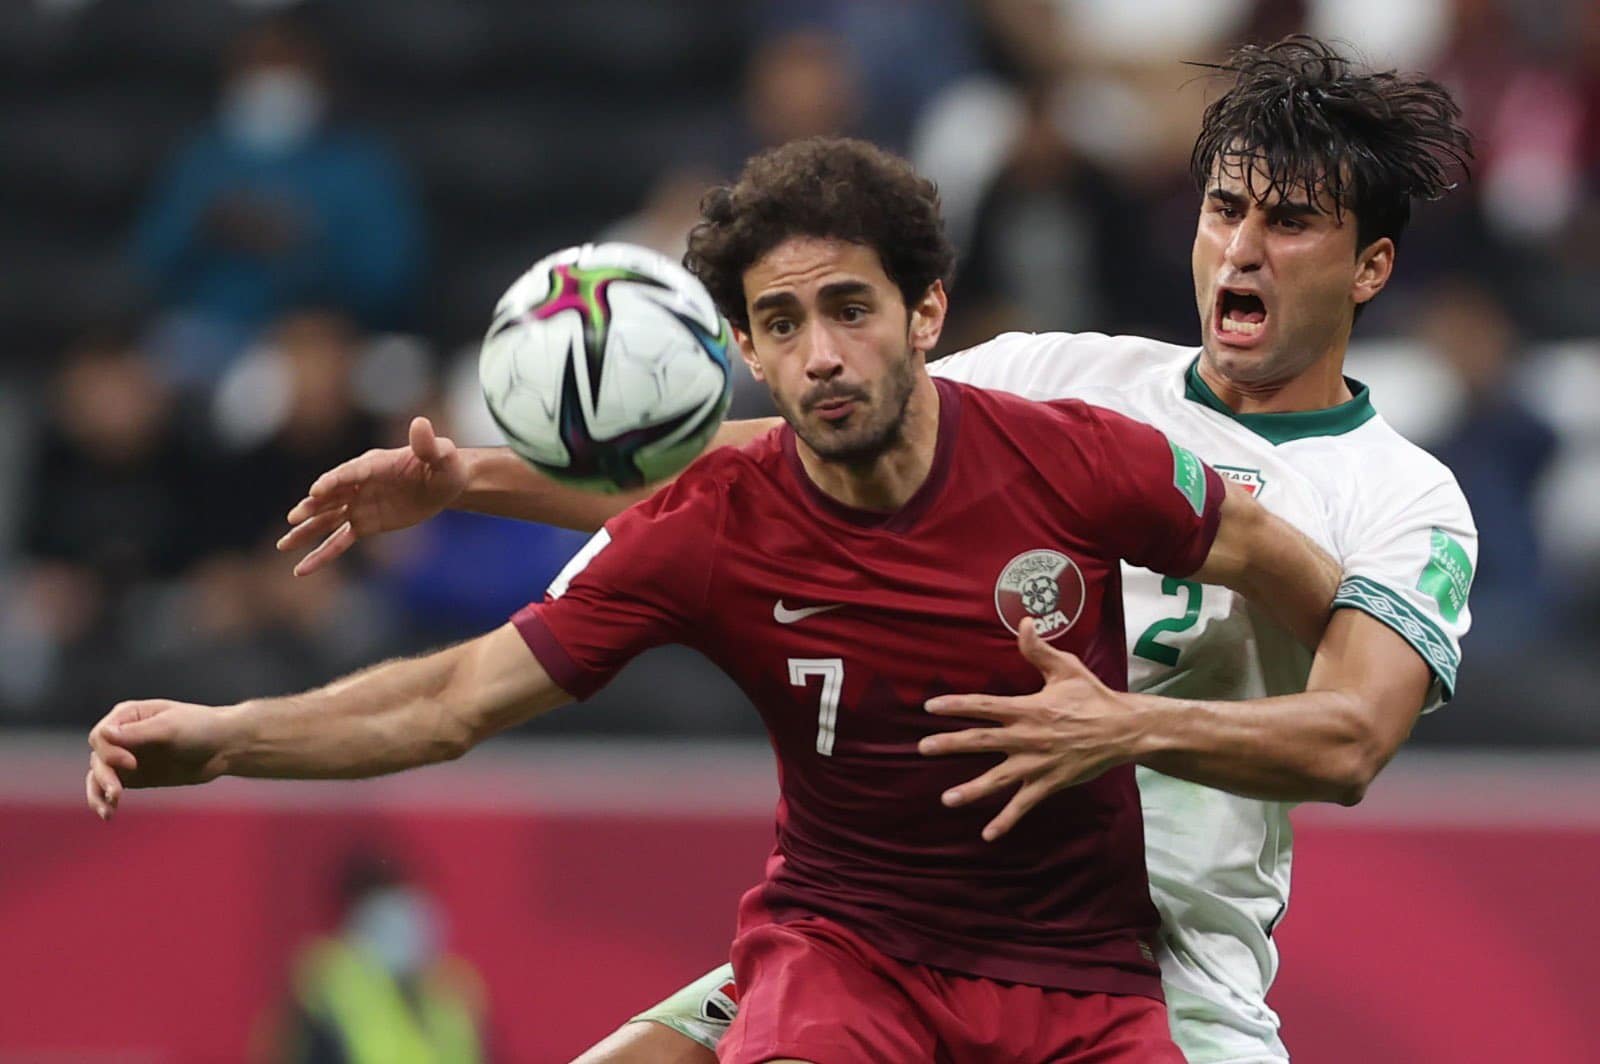 منتخب قطر يحقق العلامة الكاملة بعد فوزه على العراق بالثلاثية النظيفة watanserb.com